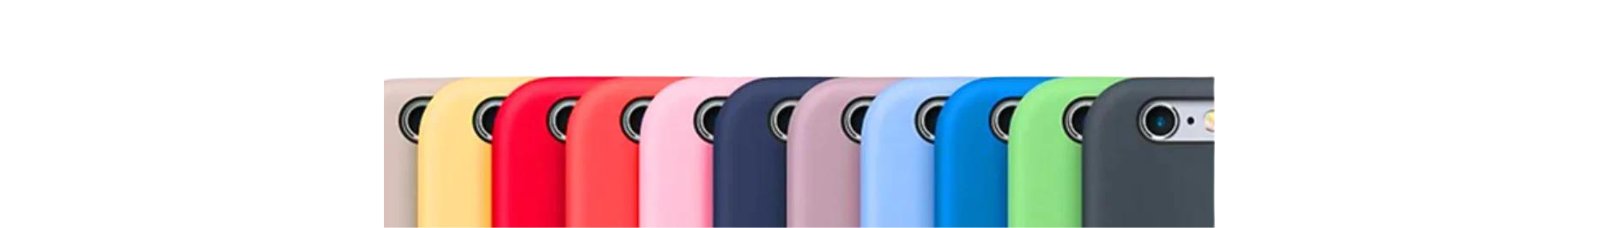 iPhone SE Cases